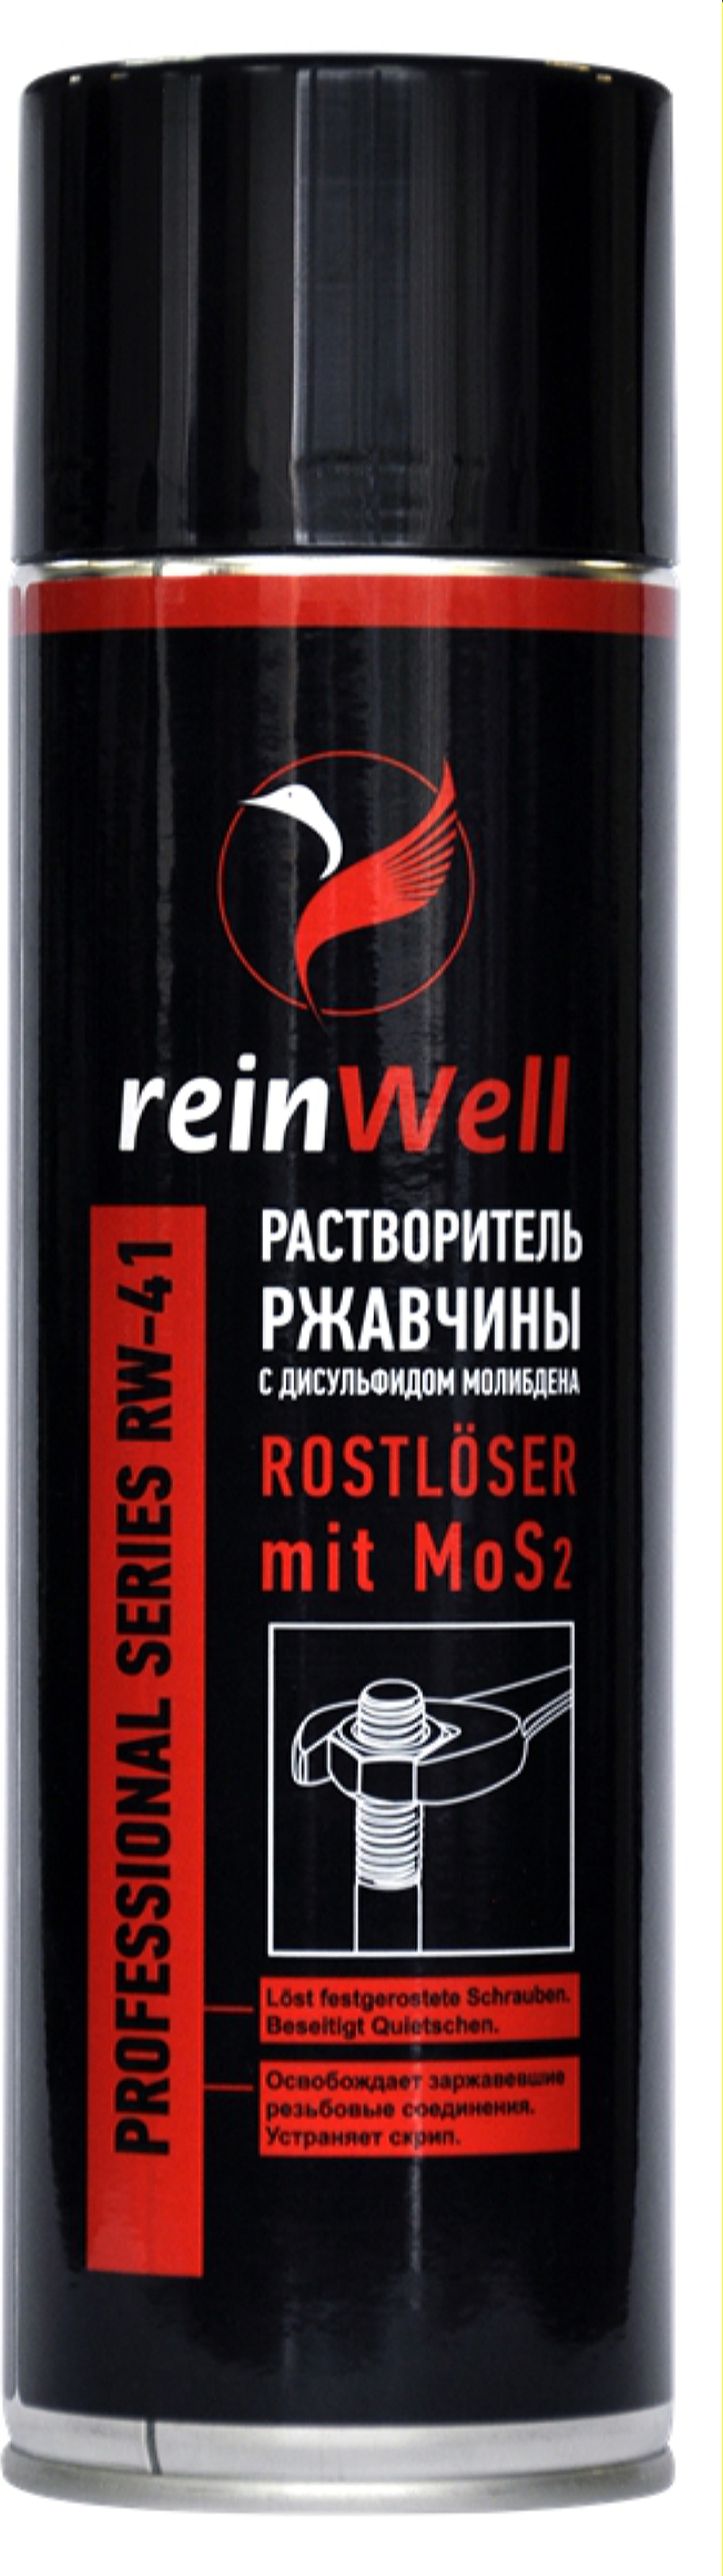 REINWELL 3242 Reinwell раствор.ржавчины с дисульф.молибдена mos2 rw 41 (0,5л) купить в Самаре